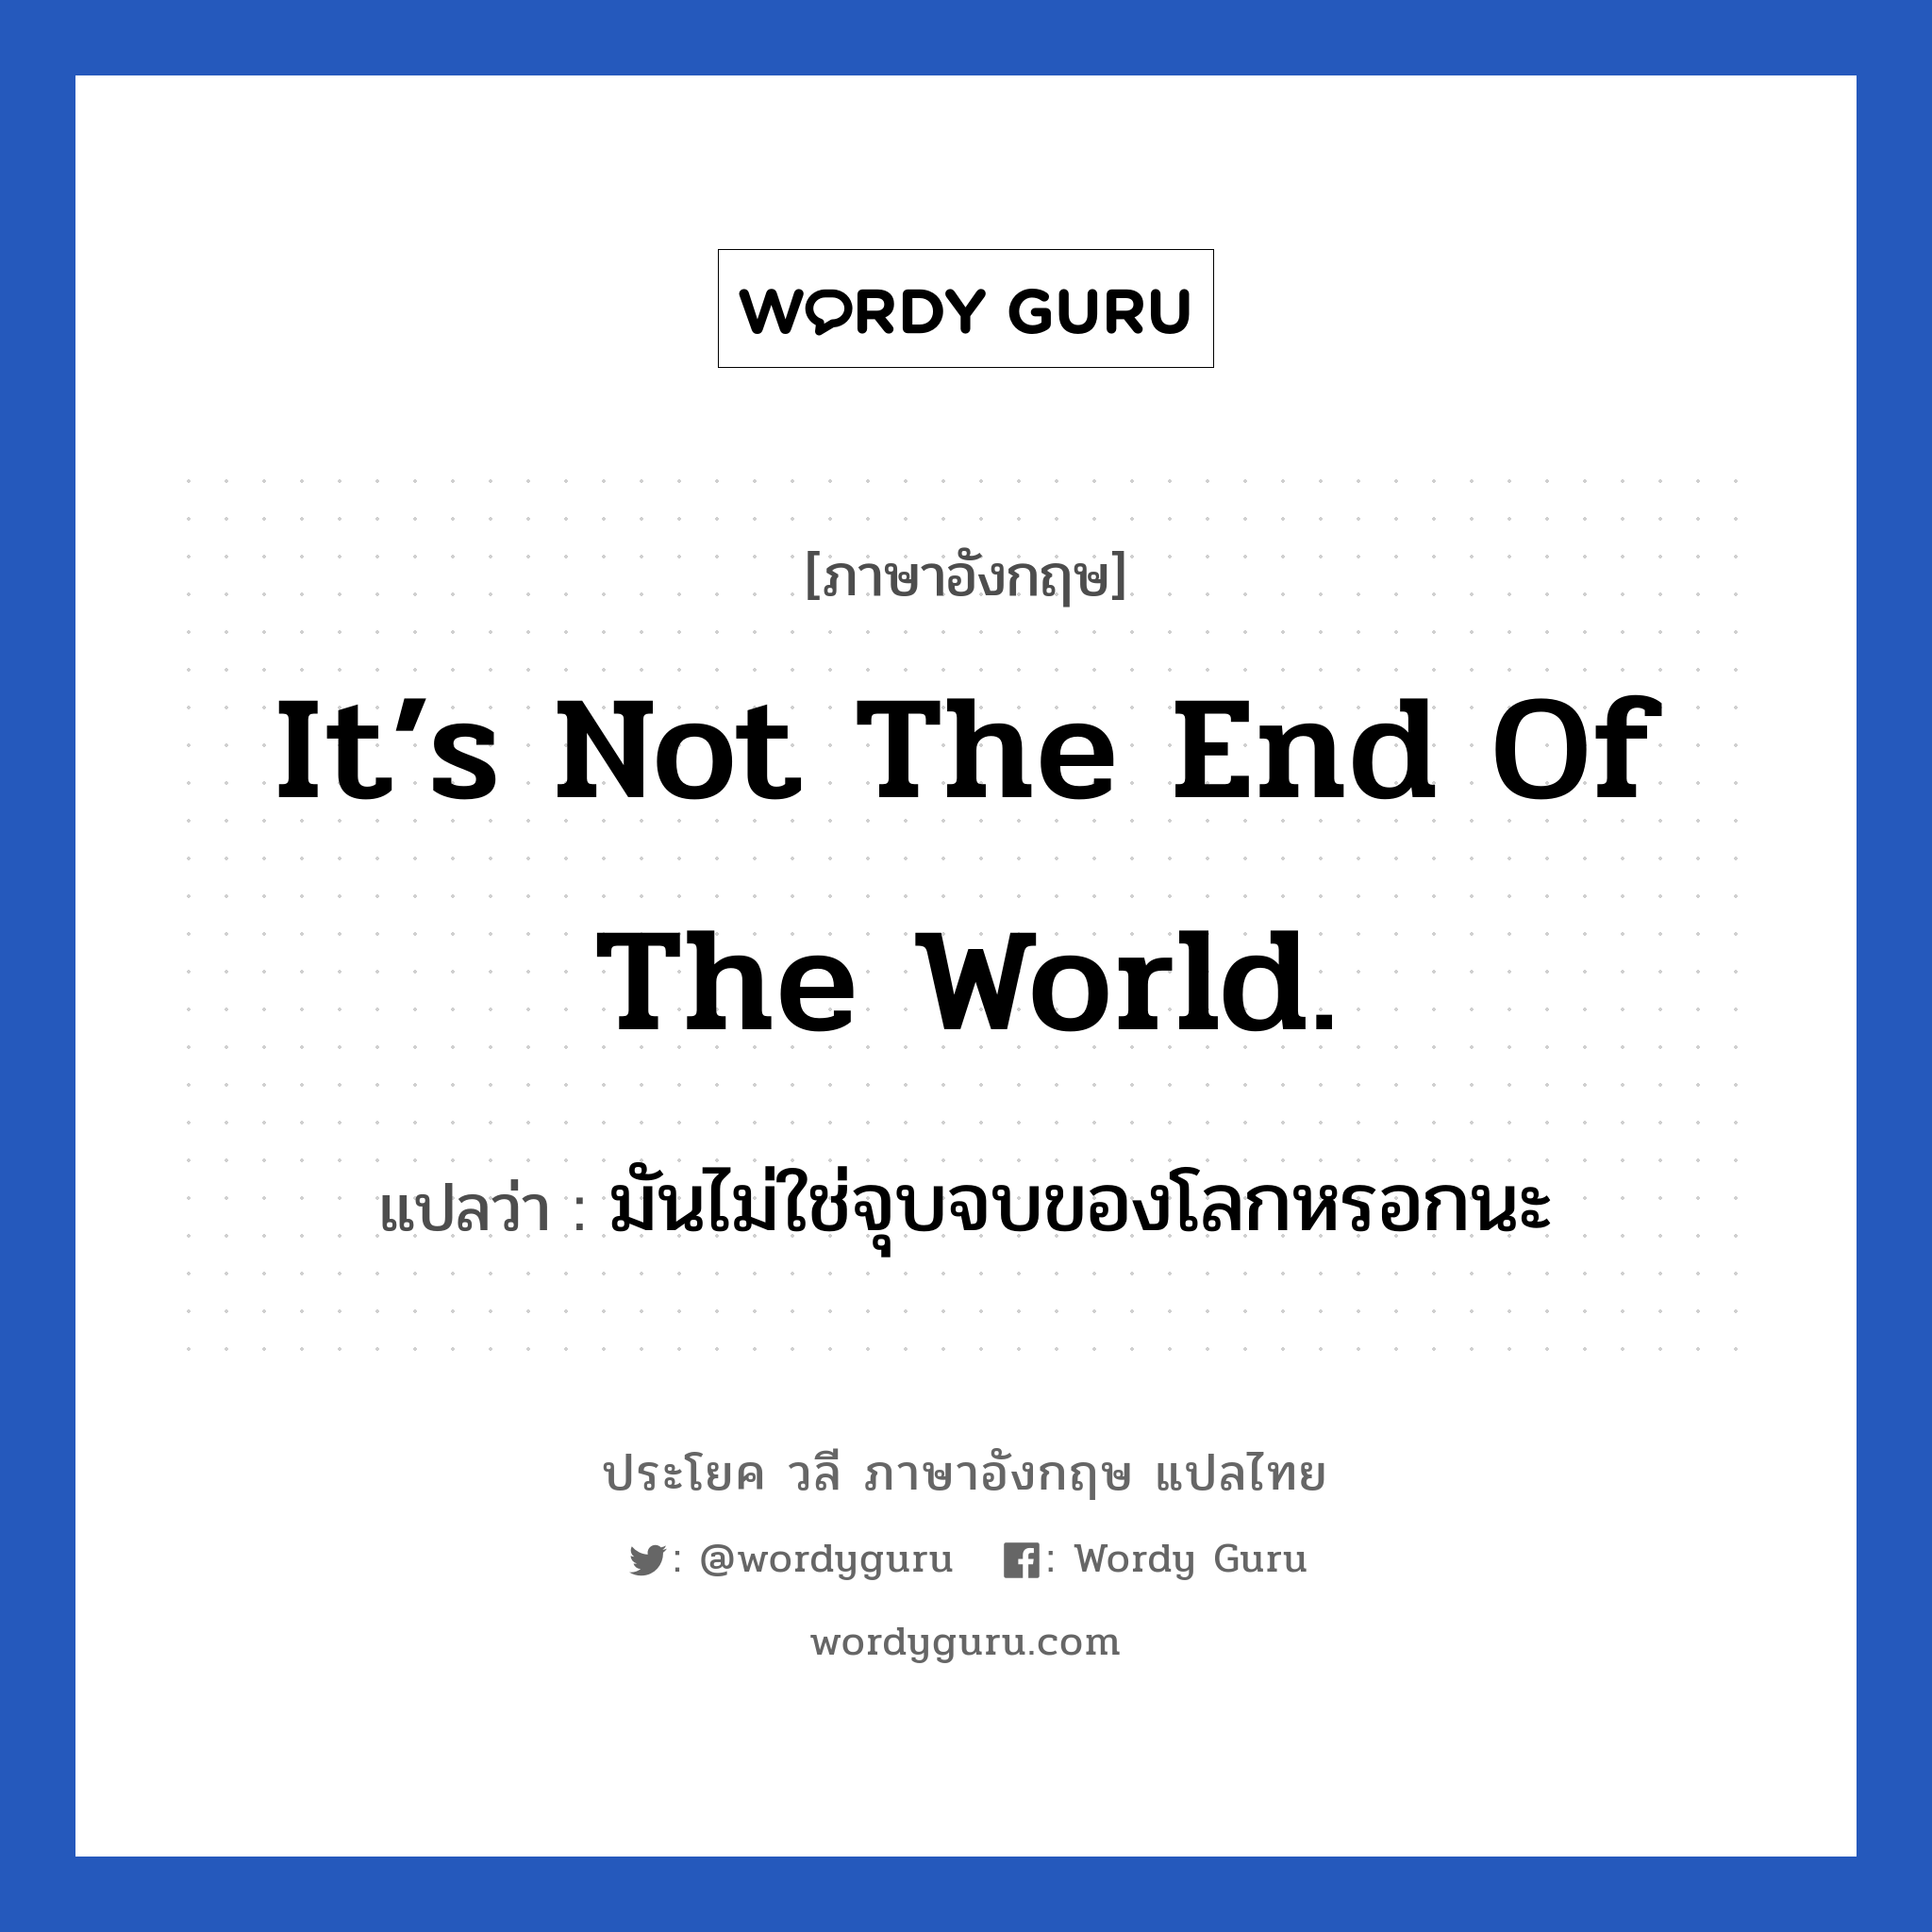 มันไม่ใช่จุบจบของโลกหรอกนะ ภาษาอังกฤษ?, วลีภาษาอังกฤษ มันไม่ใช่จุบจบของโลกหรอกนะ แปลว่า It’s not the end of the world. อย่าคิดมากไปเลย หมวด ให้กำลังใจ